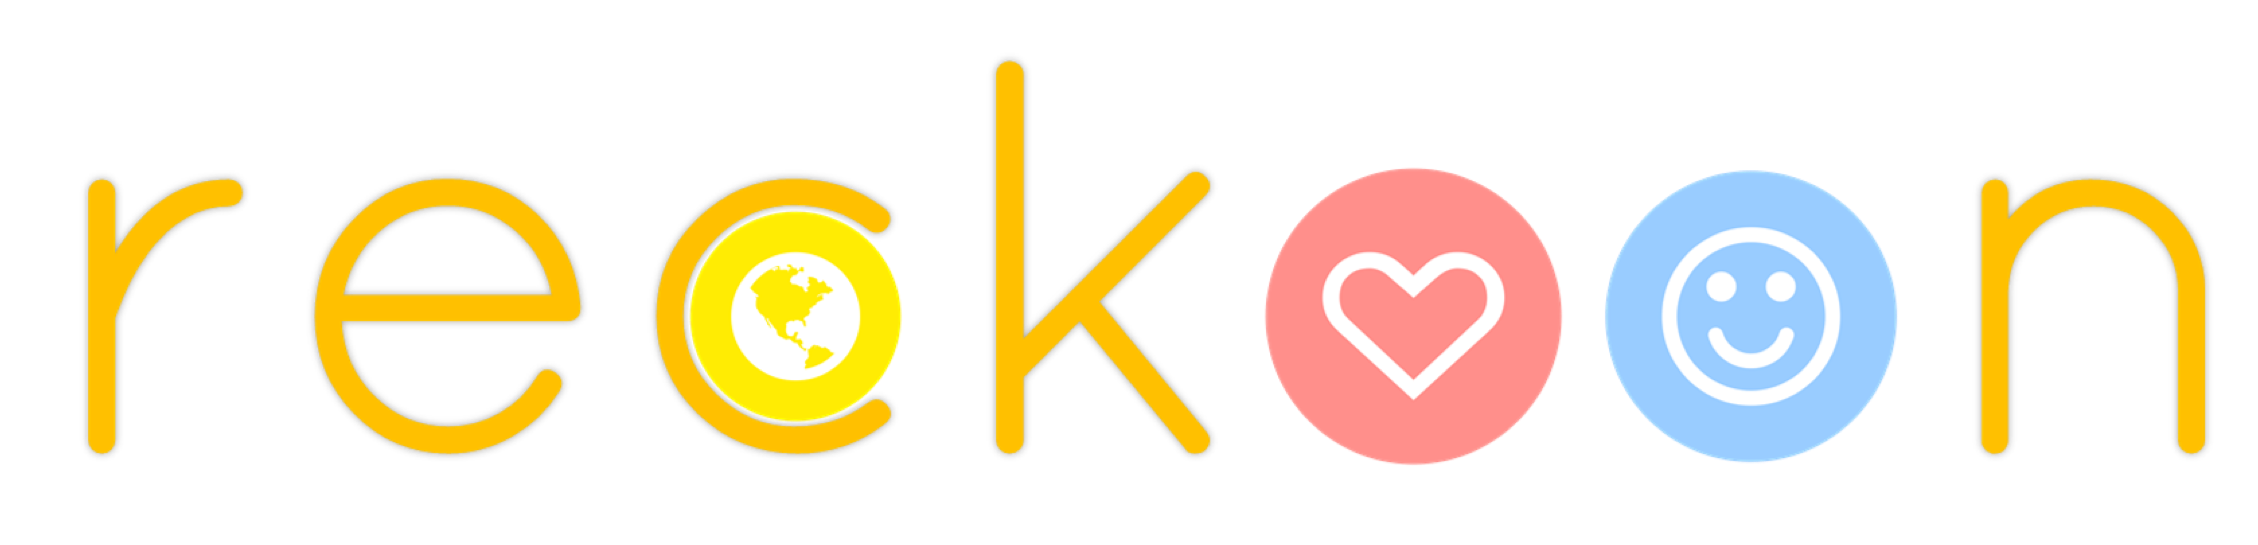 reckoon logo text